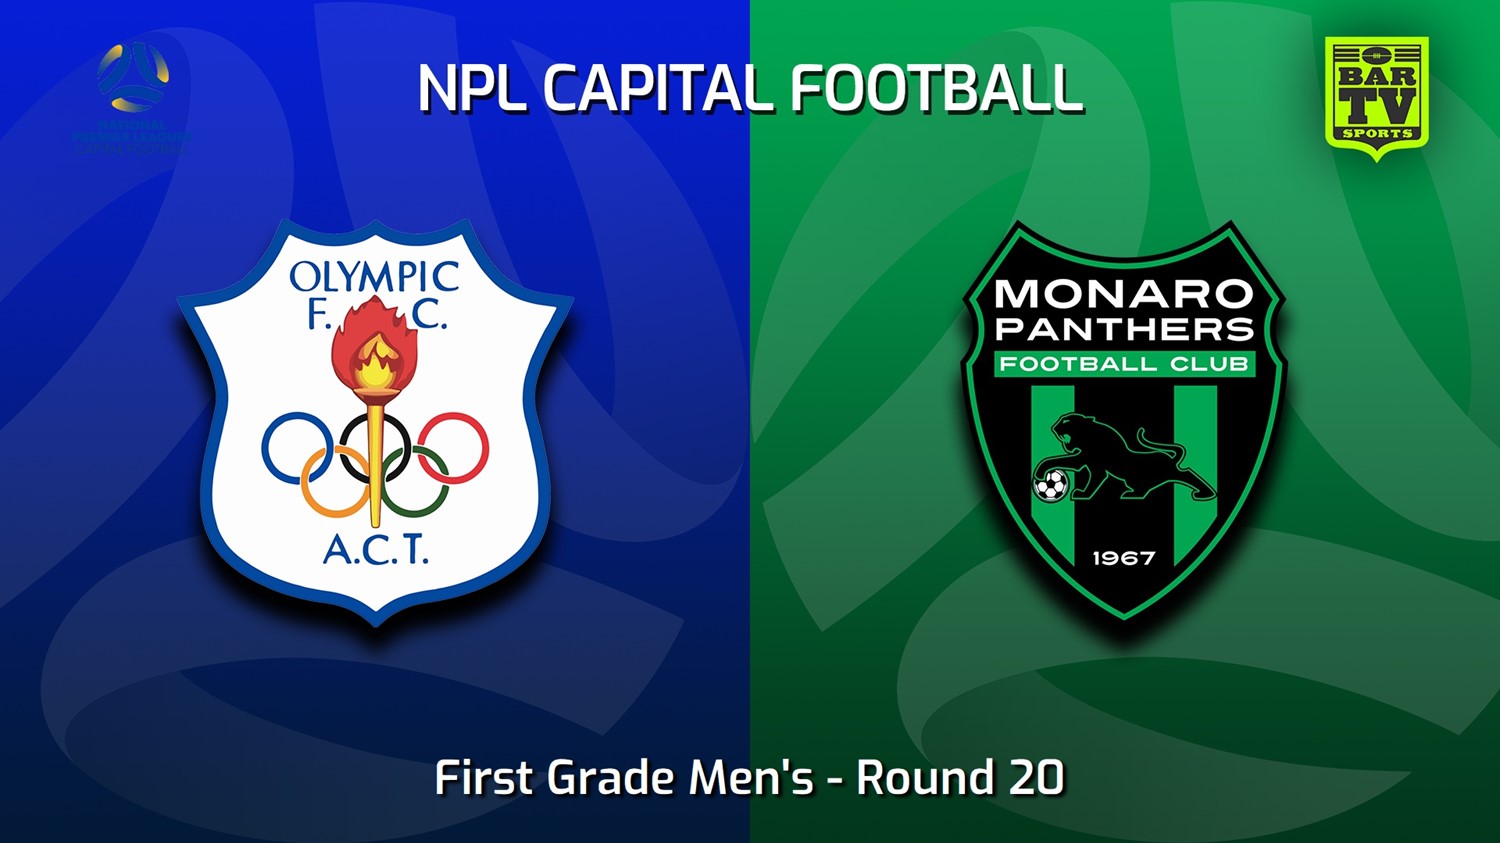 230826-Capital NPL Round 20 - Canberra Olympic FC v Monaro Panthers Minigame Slate Image